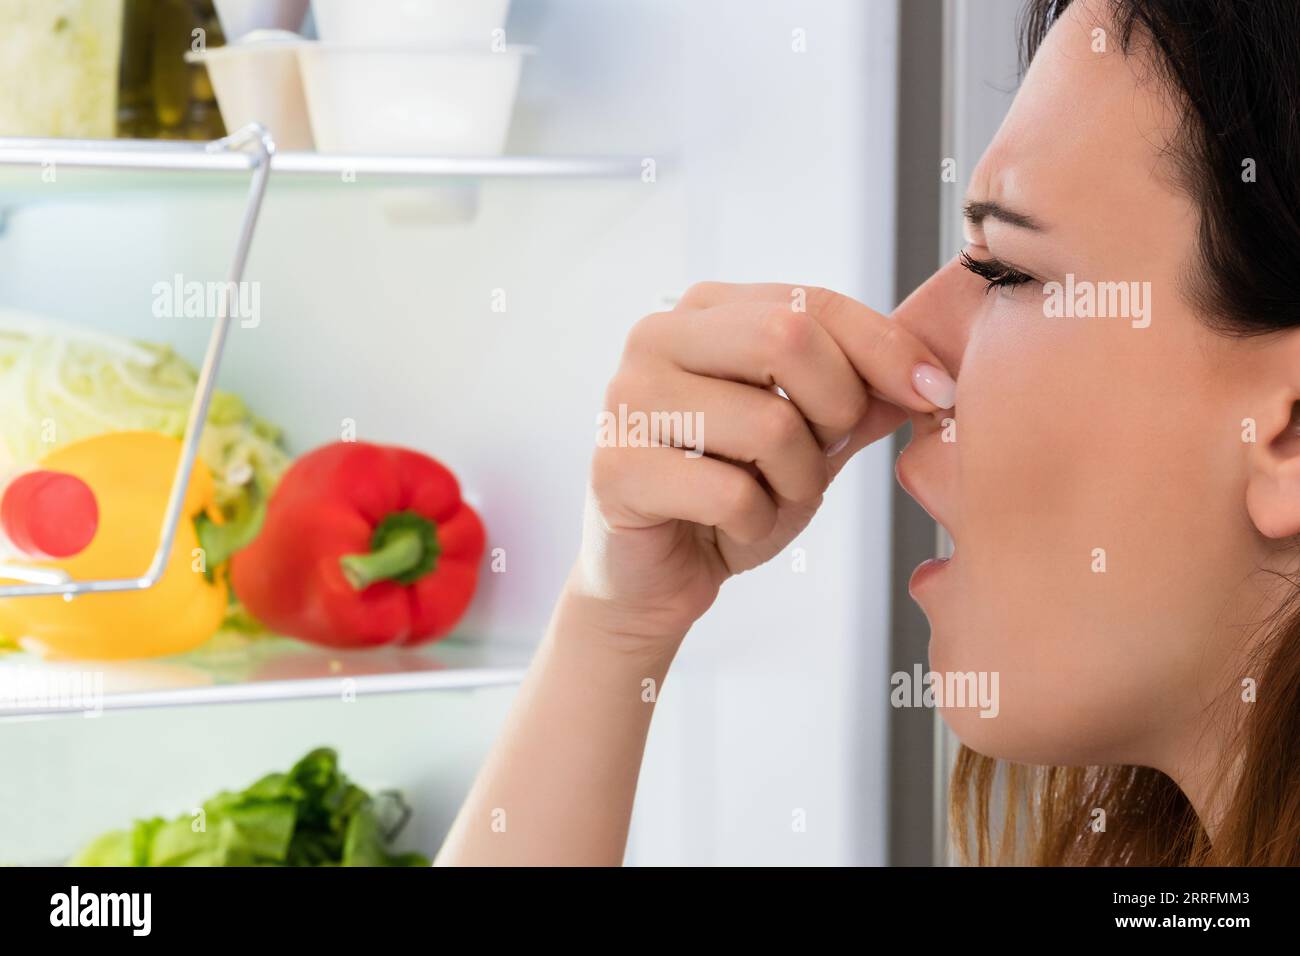 Une jeune femme a remarqué une odeur sortant du réfrigérateur Banque D'Images